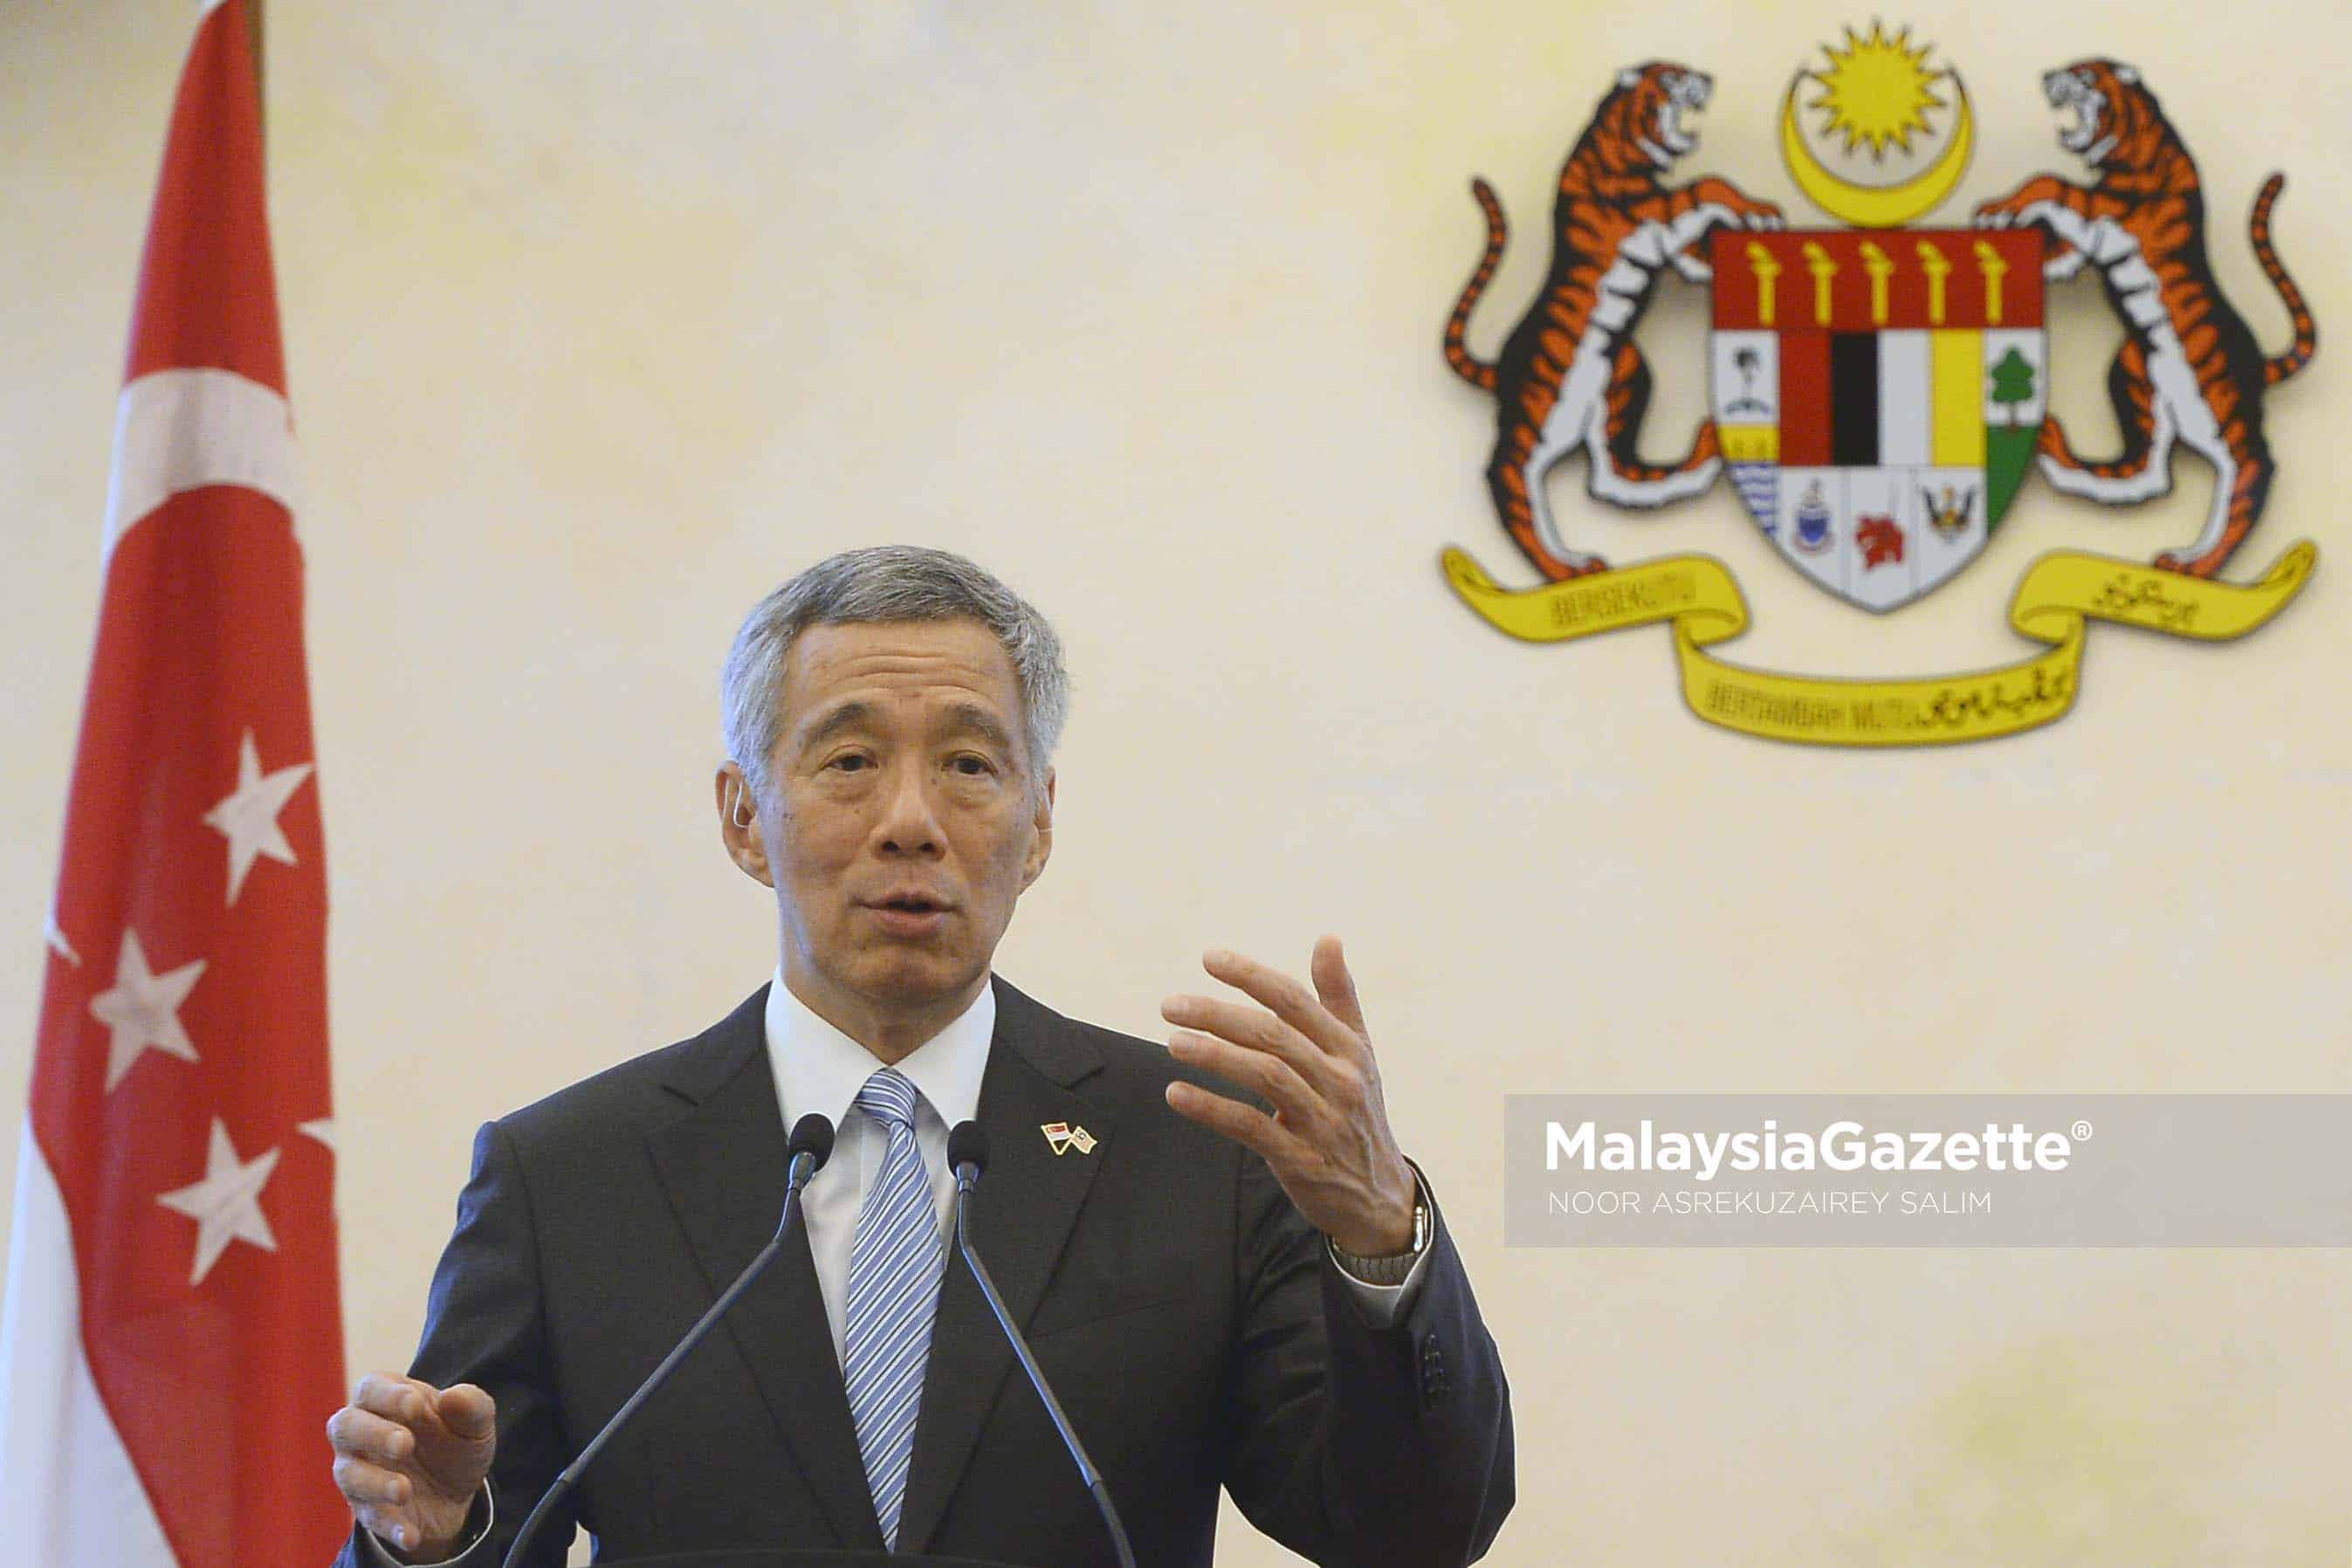 Hubungan dengan Malaysia baik tetapi masih ada isu untuk diselesaikan pengganti, kata PM Lee